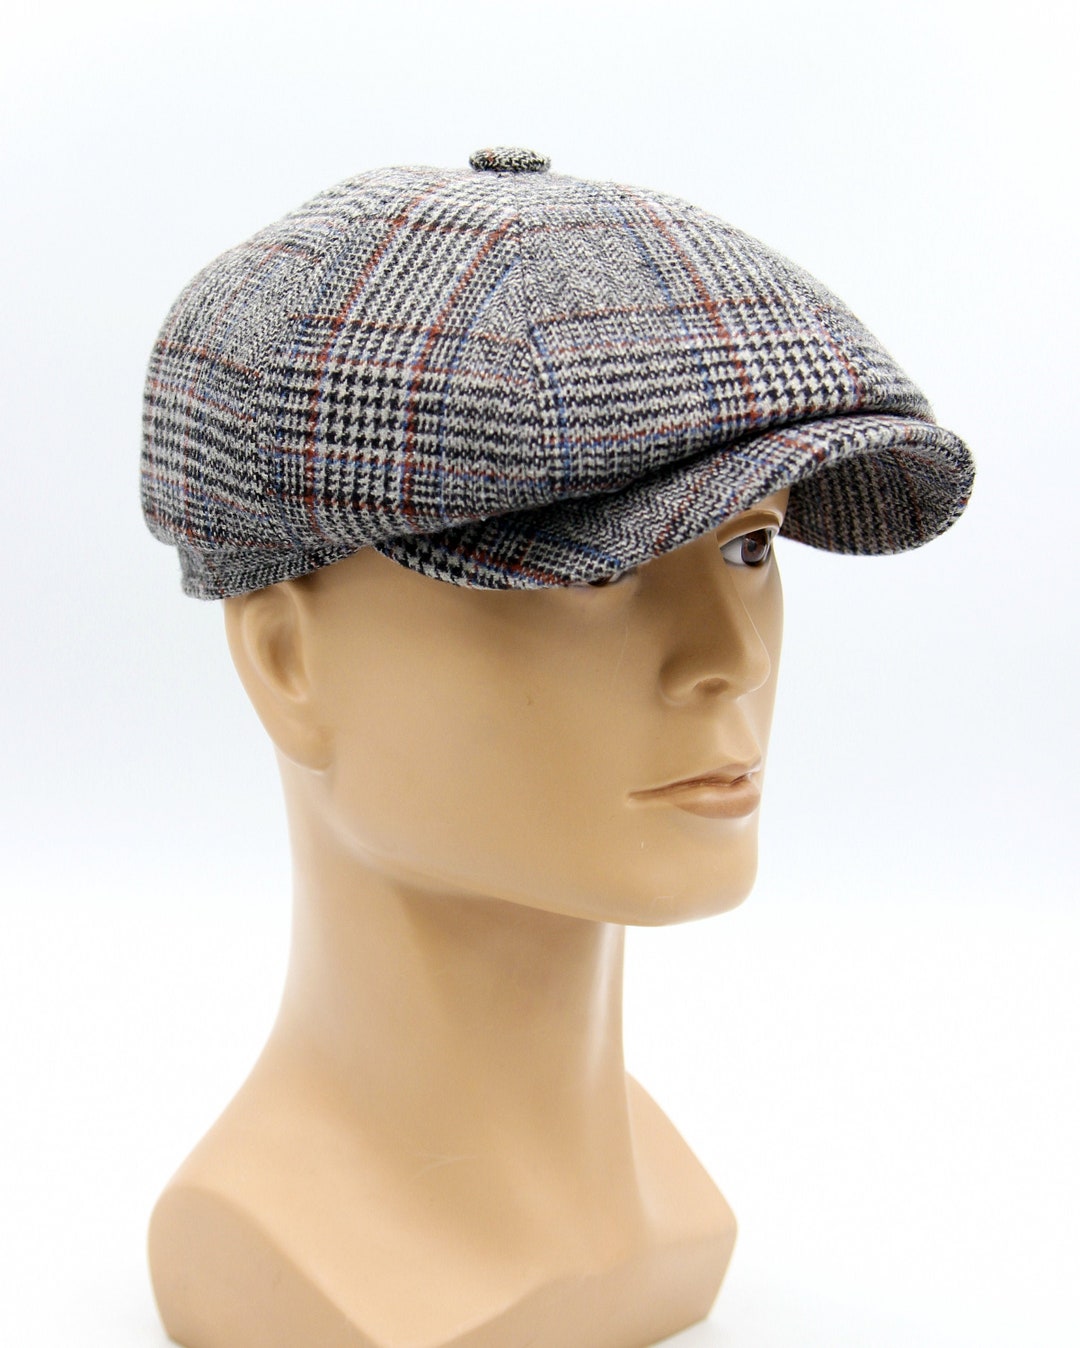 Men's Newsboy Cap Baker Boy Hat Wool Grey - Etsy